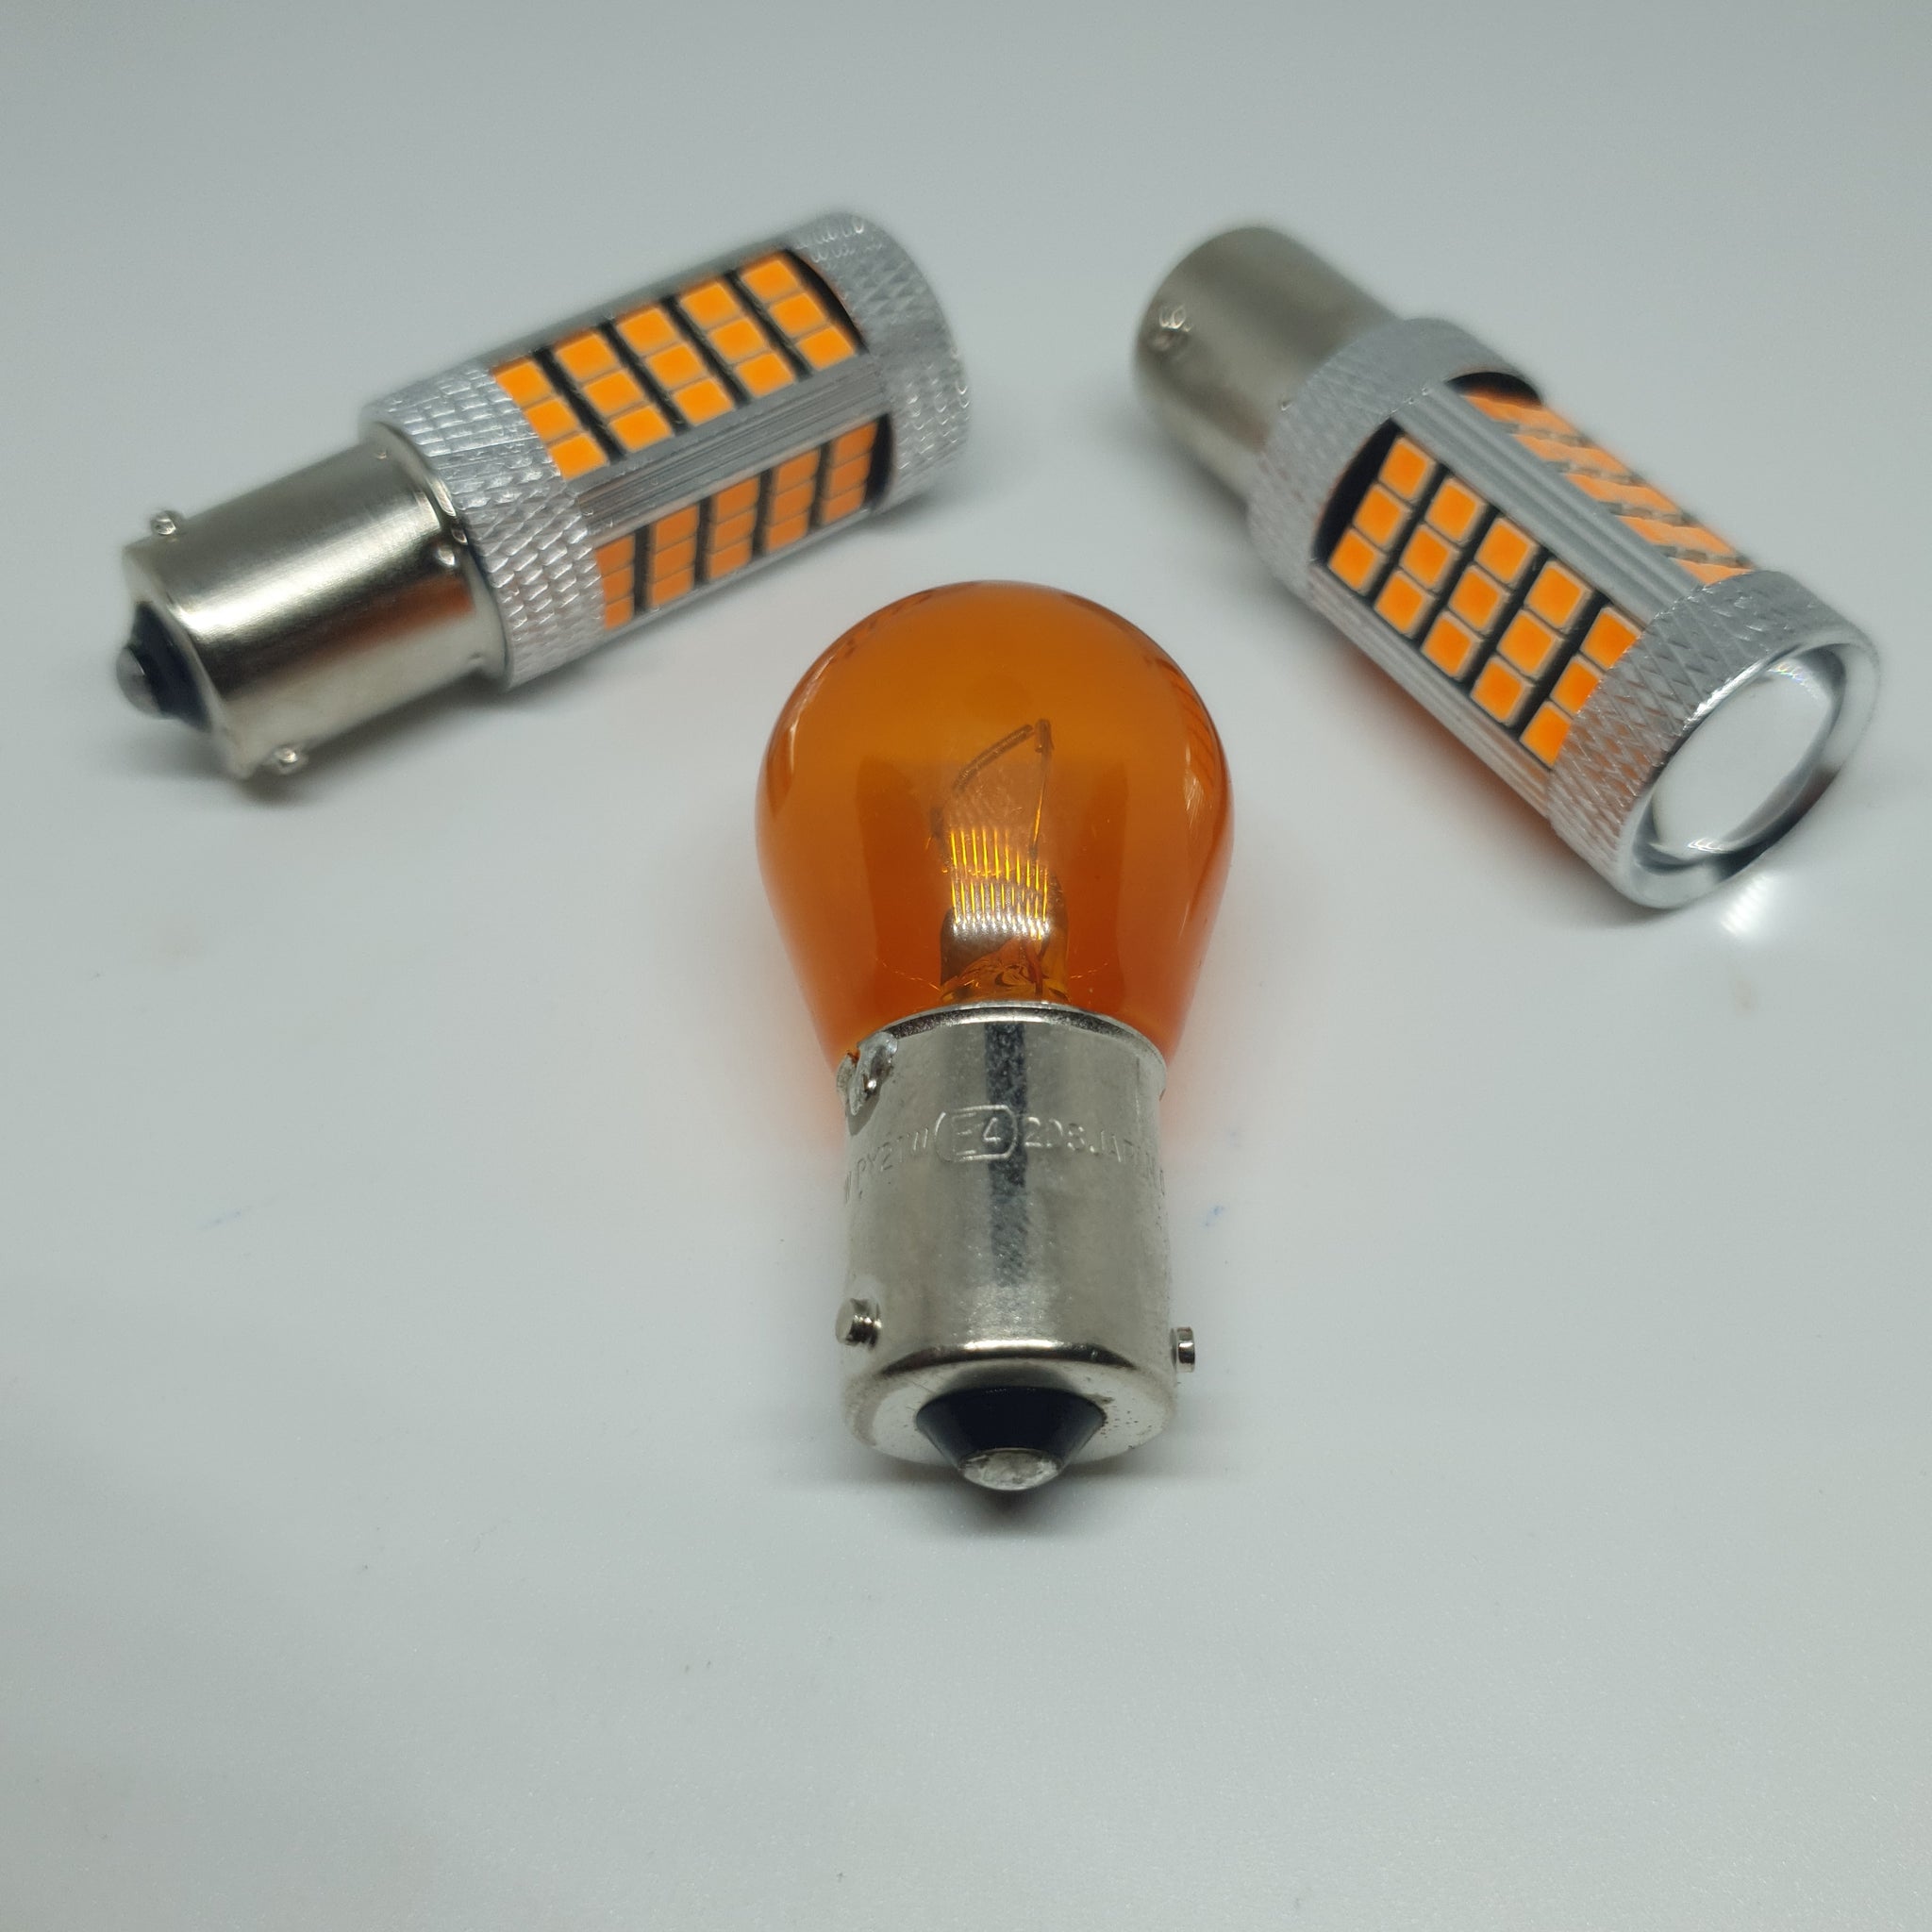 2x Ampoules LED PY21W - BAU15S CANbus